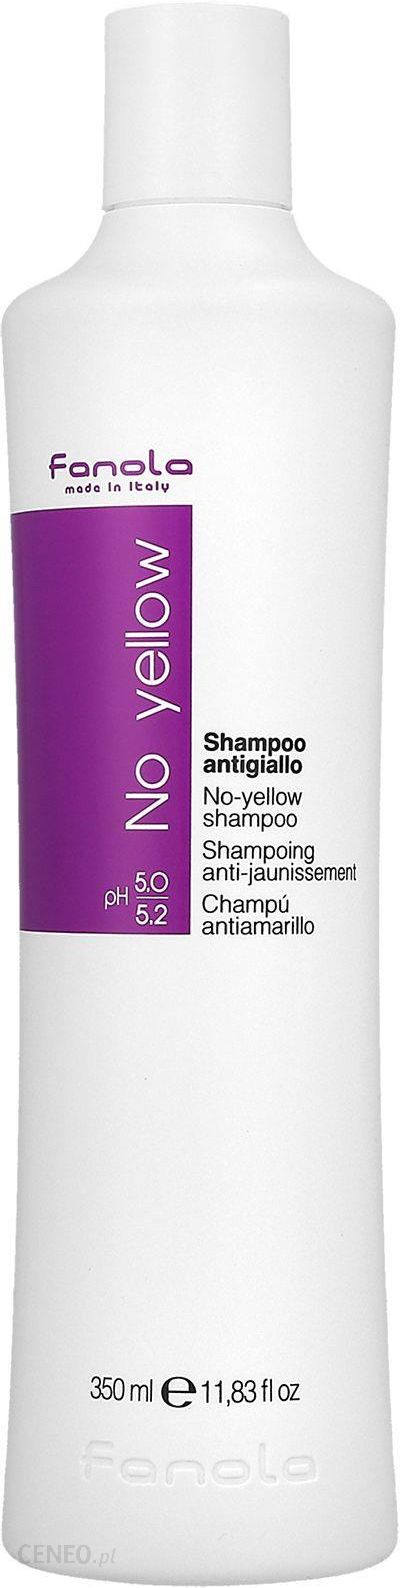 fanola no yellow szampon do włosów 350 ml